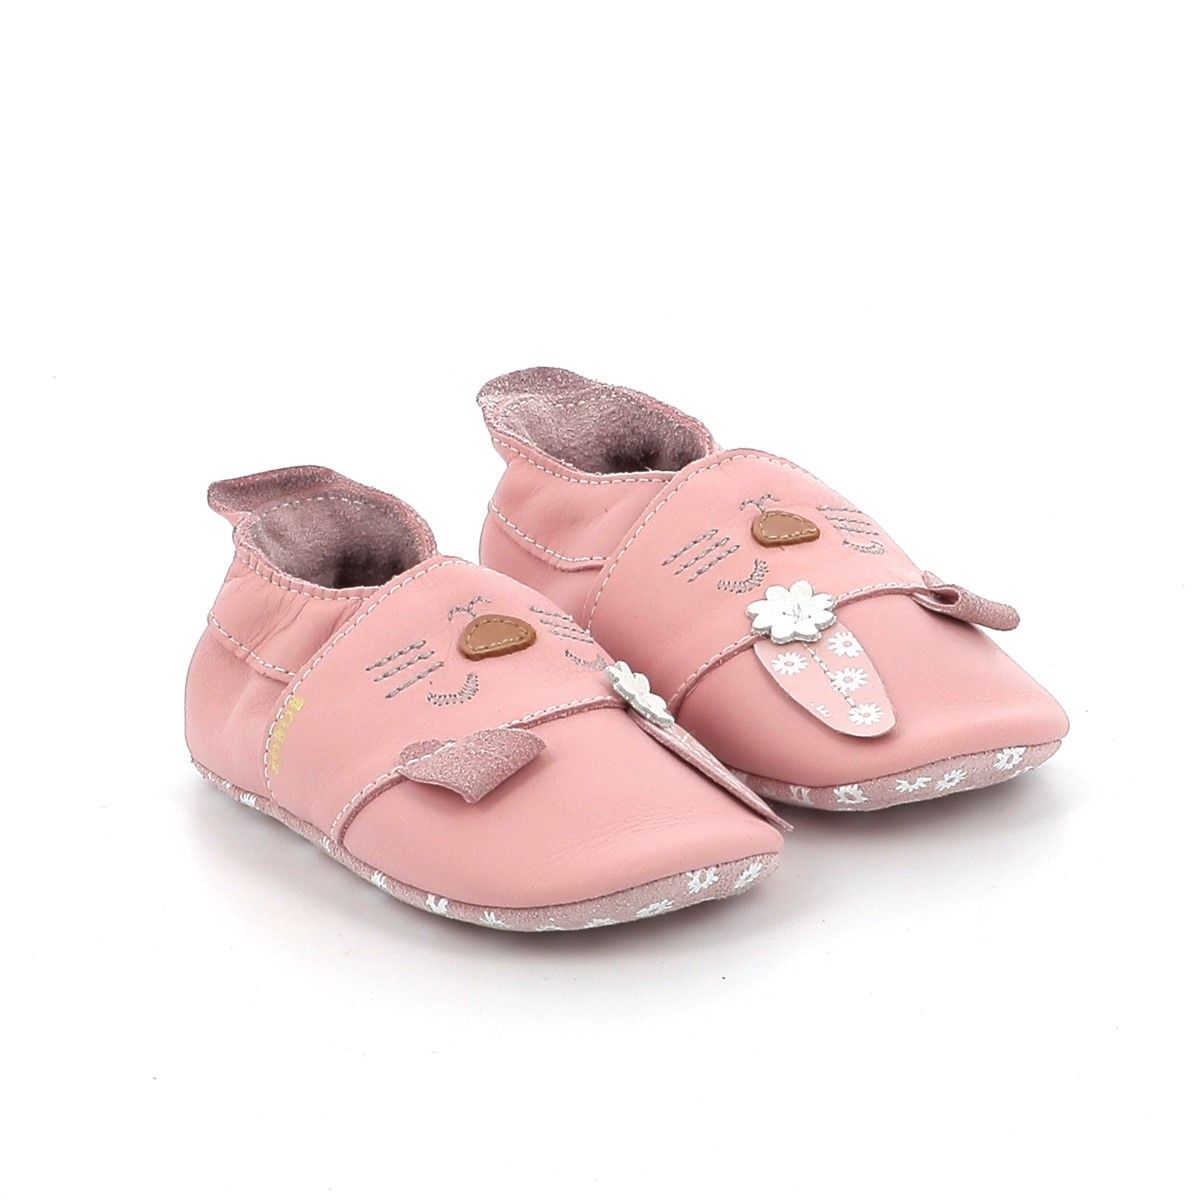 Παπούτσι Αγκαλιάς για Κορίτσι Bobux Softsole Χρώματος Ροζ 1020-140-65